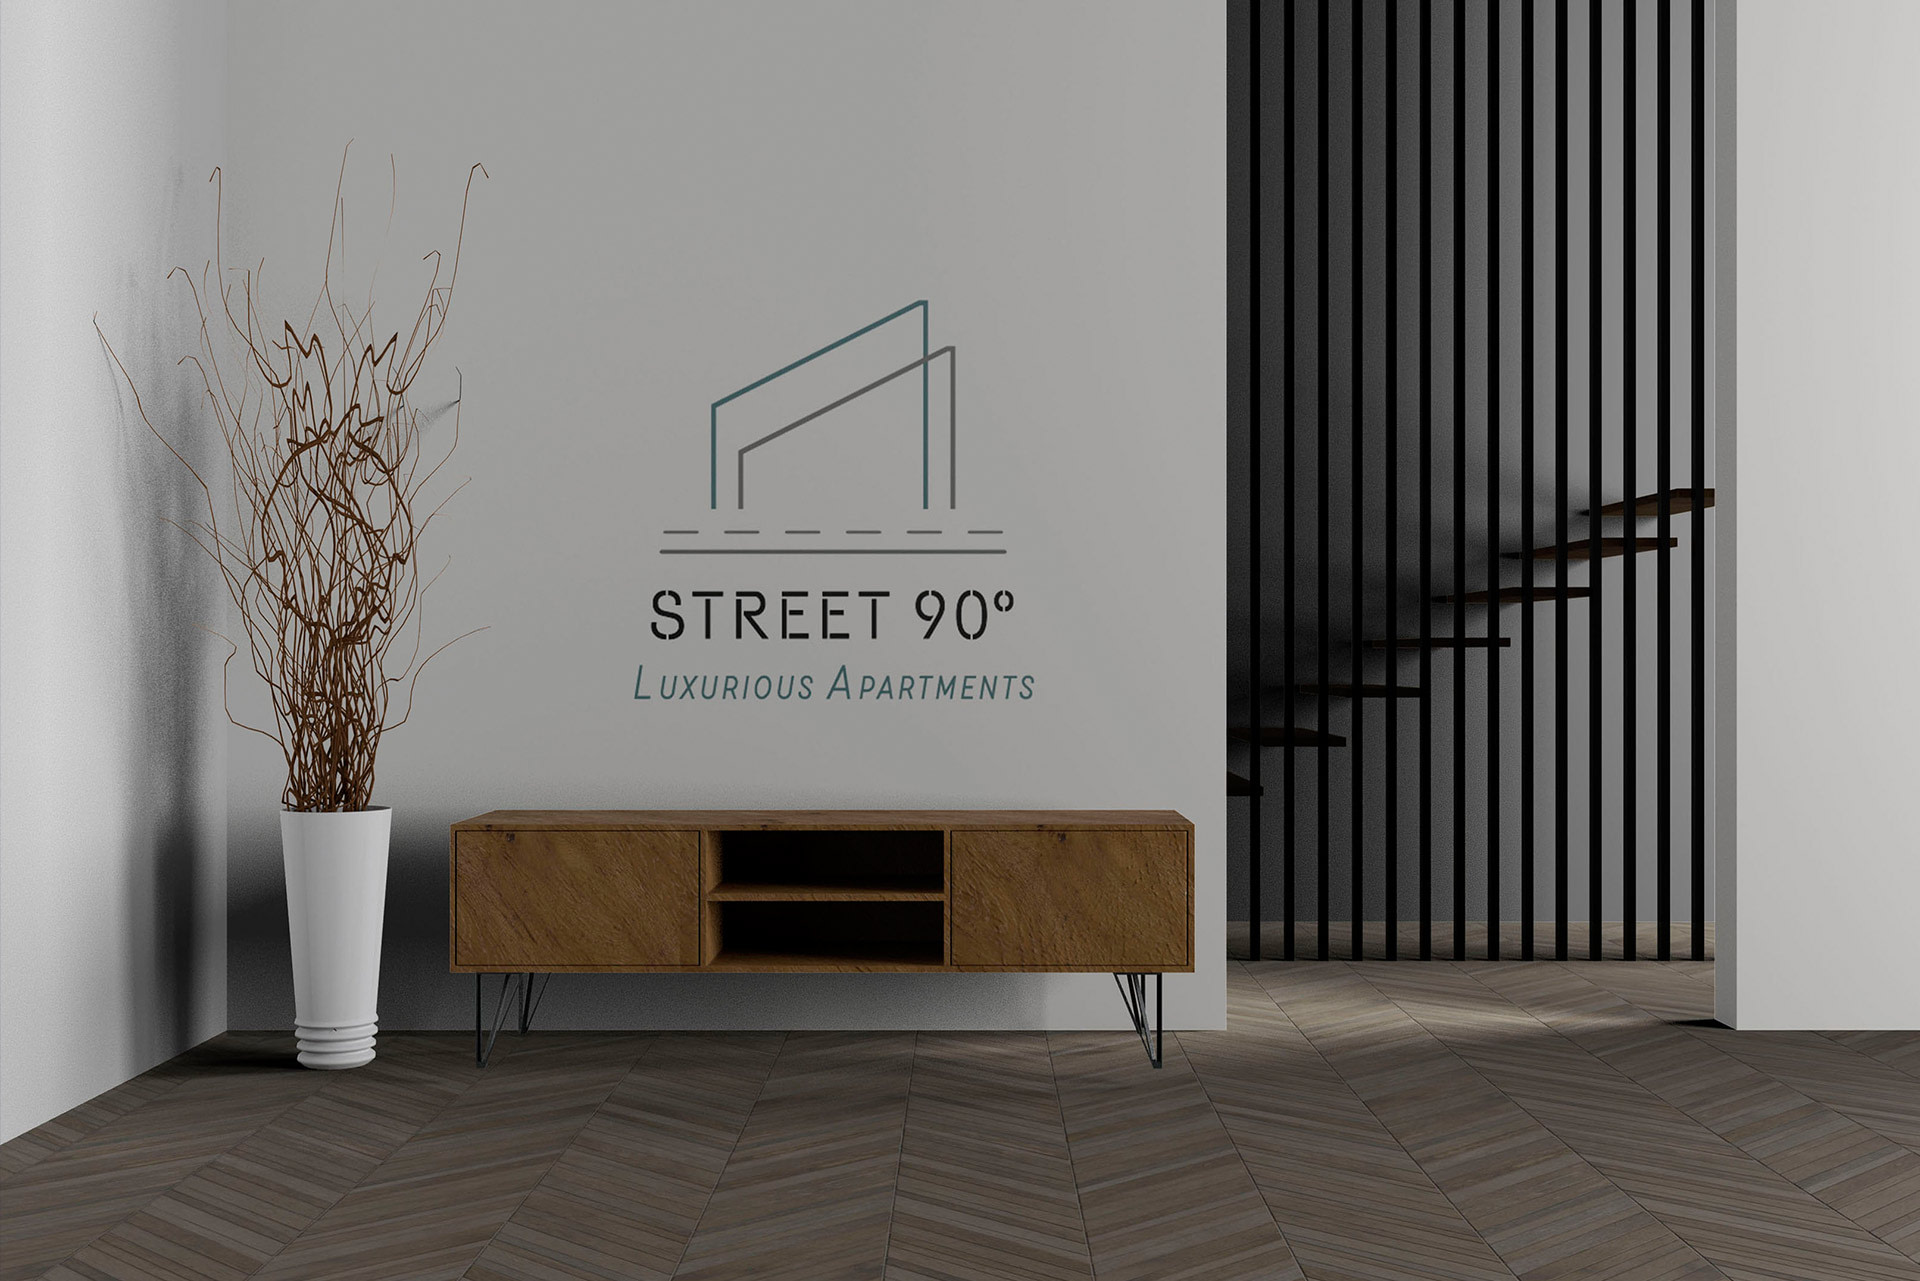 street90-logo-in-a-wall